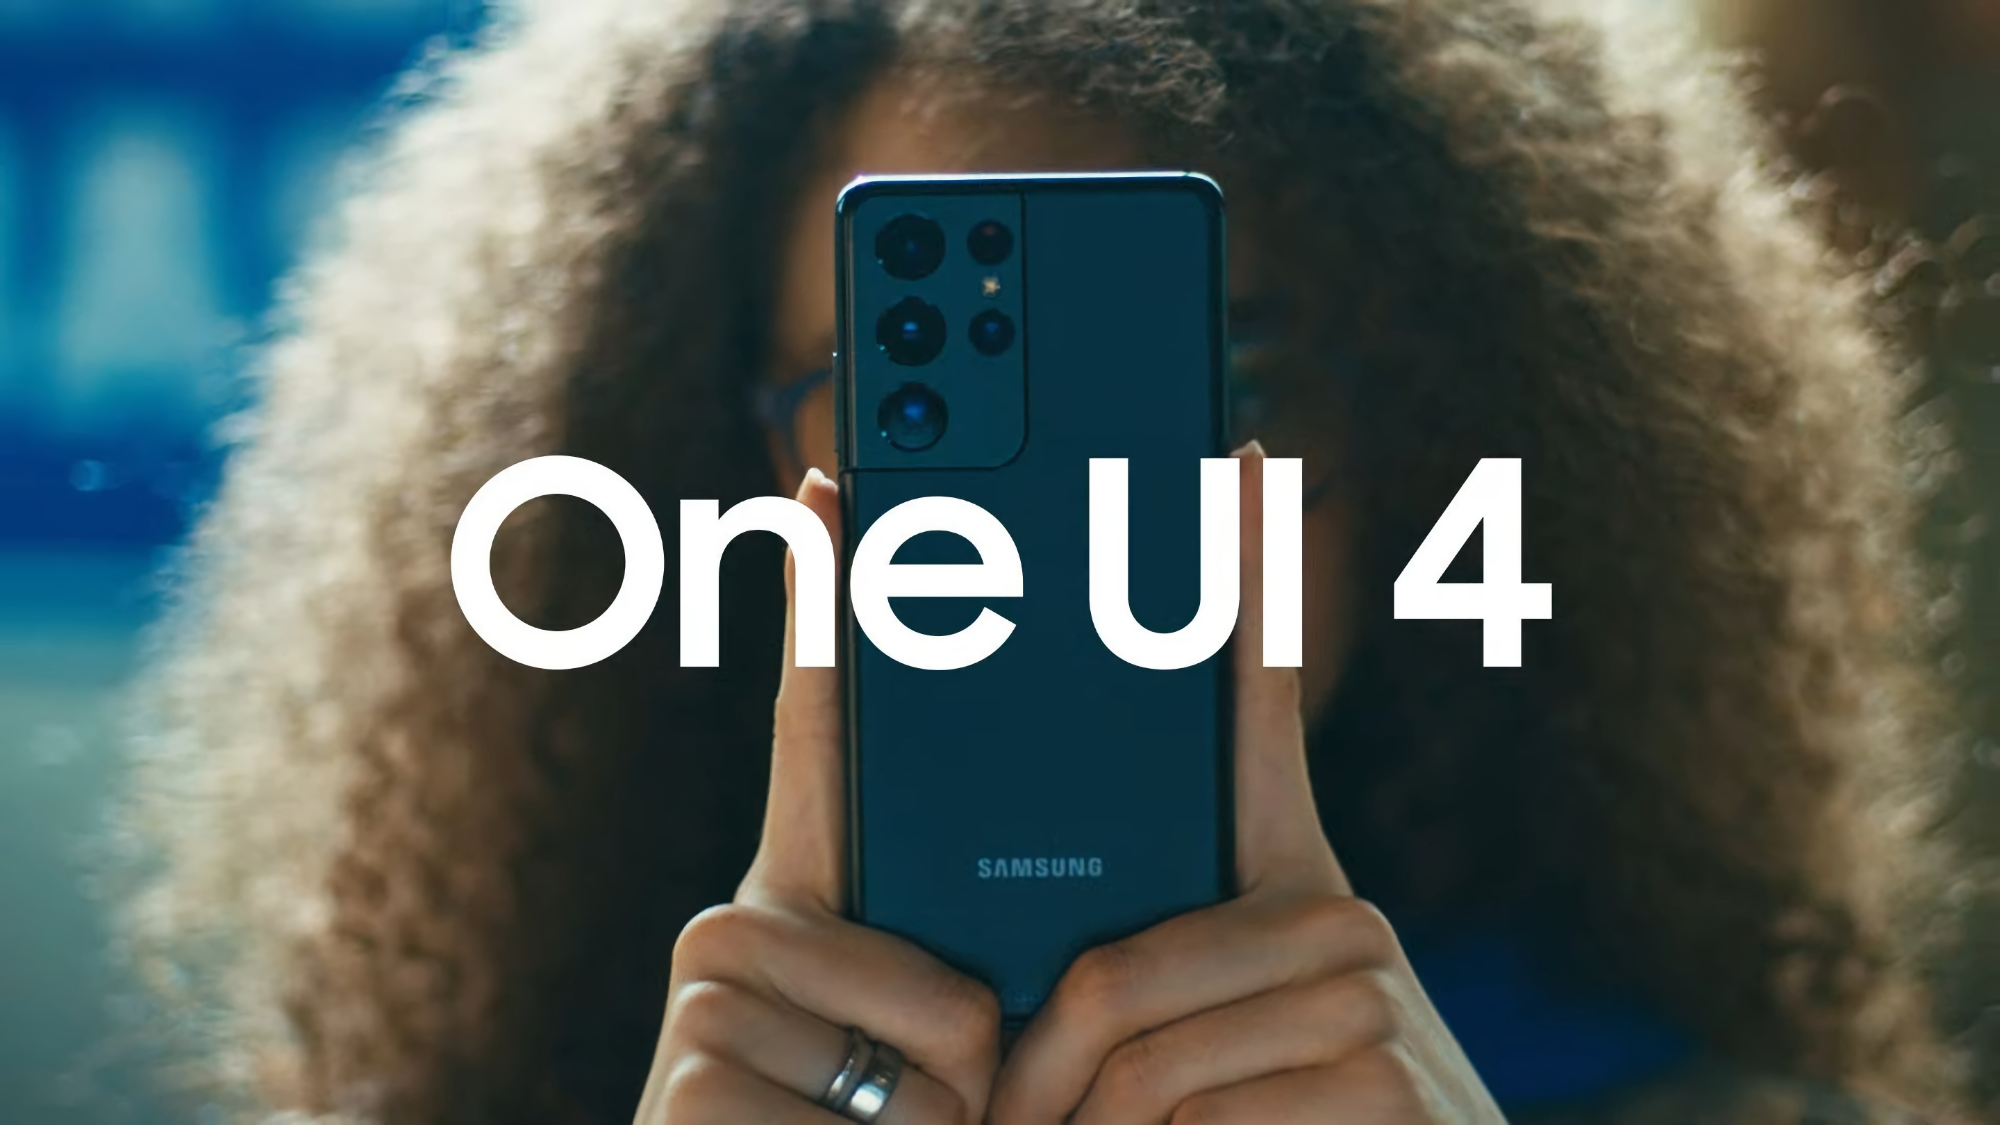 Samsung udostępnia trzecią wersję beta One UI 4 dla Galaxy S21 z usuniętymi reklamami, nowymi animacjami i aplikacją pogodową